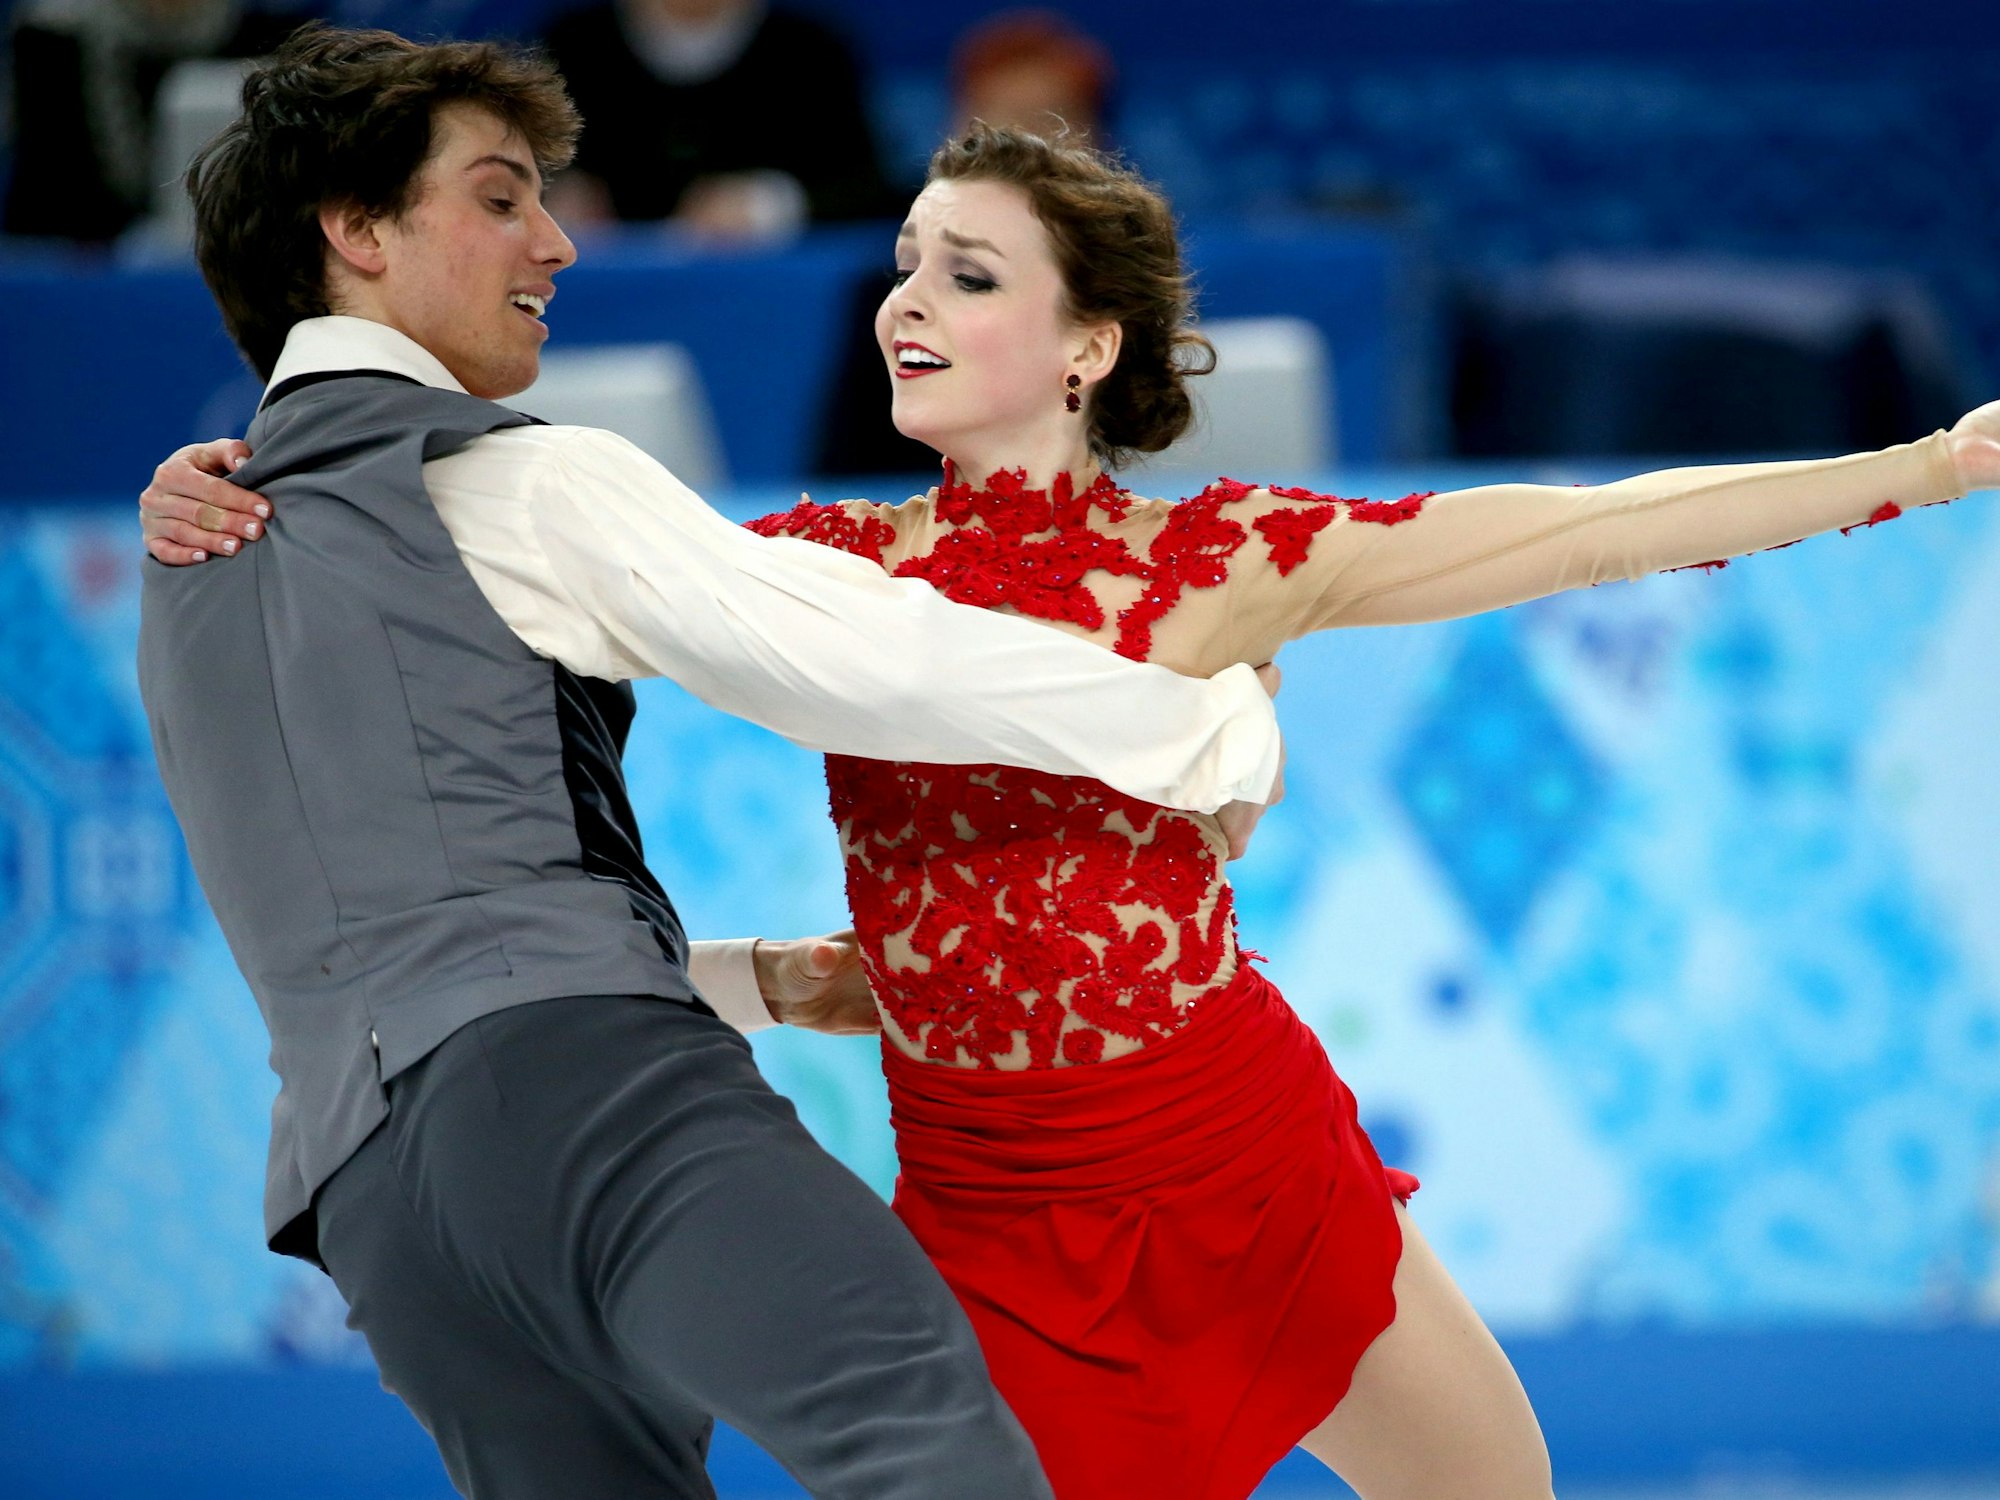 Alexandra Paul und ihr Partner Mitchell Islam bei ihrer Kür bei den Olympischen Spielen in Sotschi.